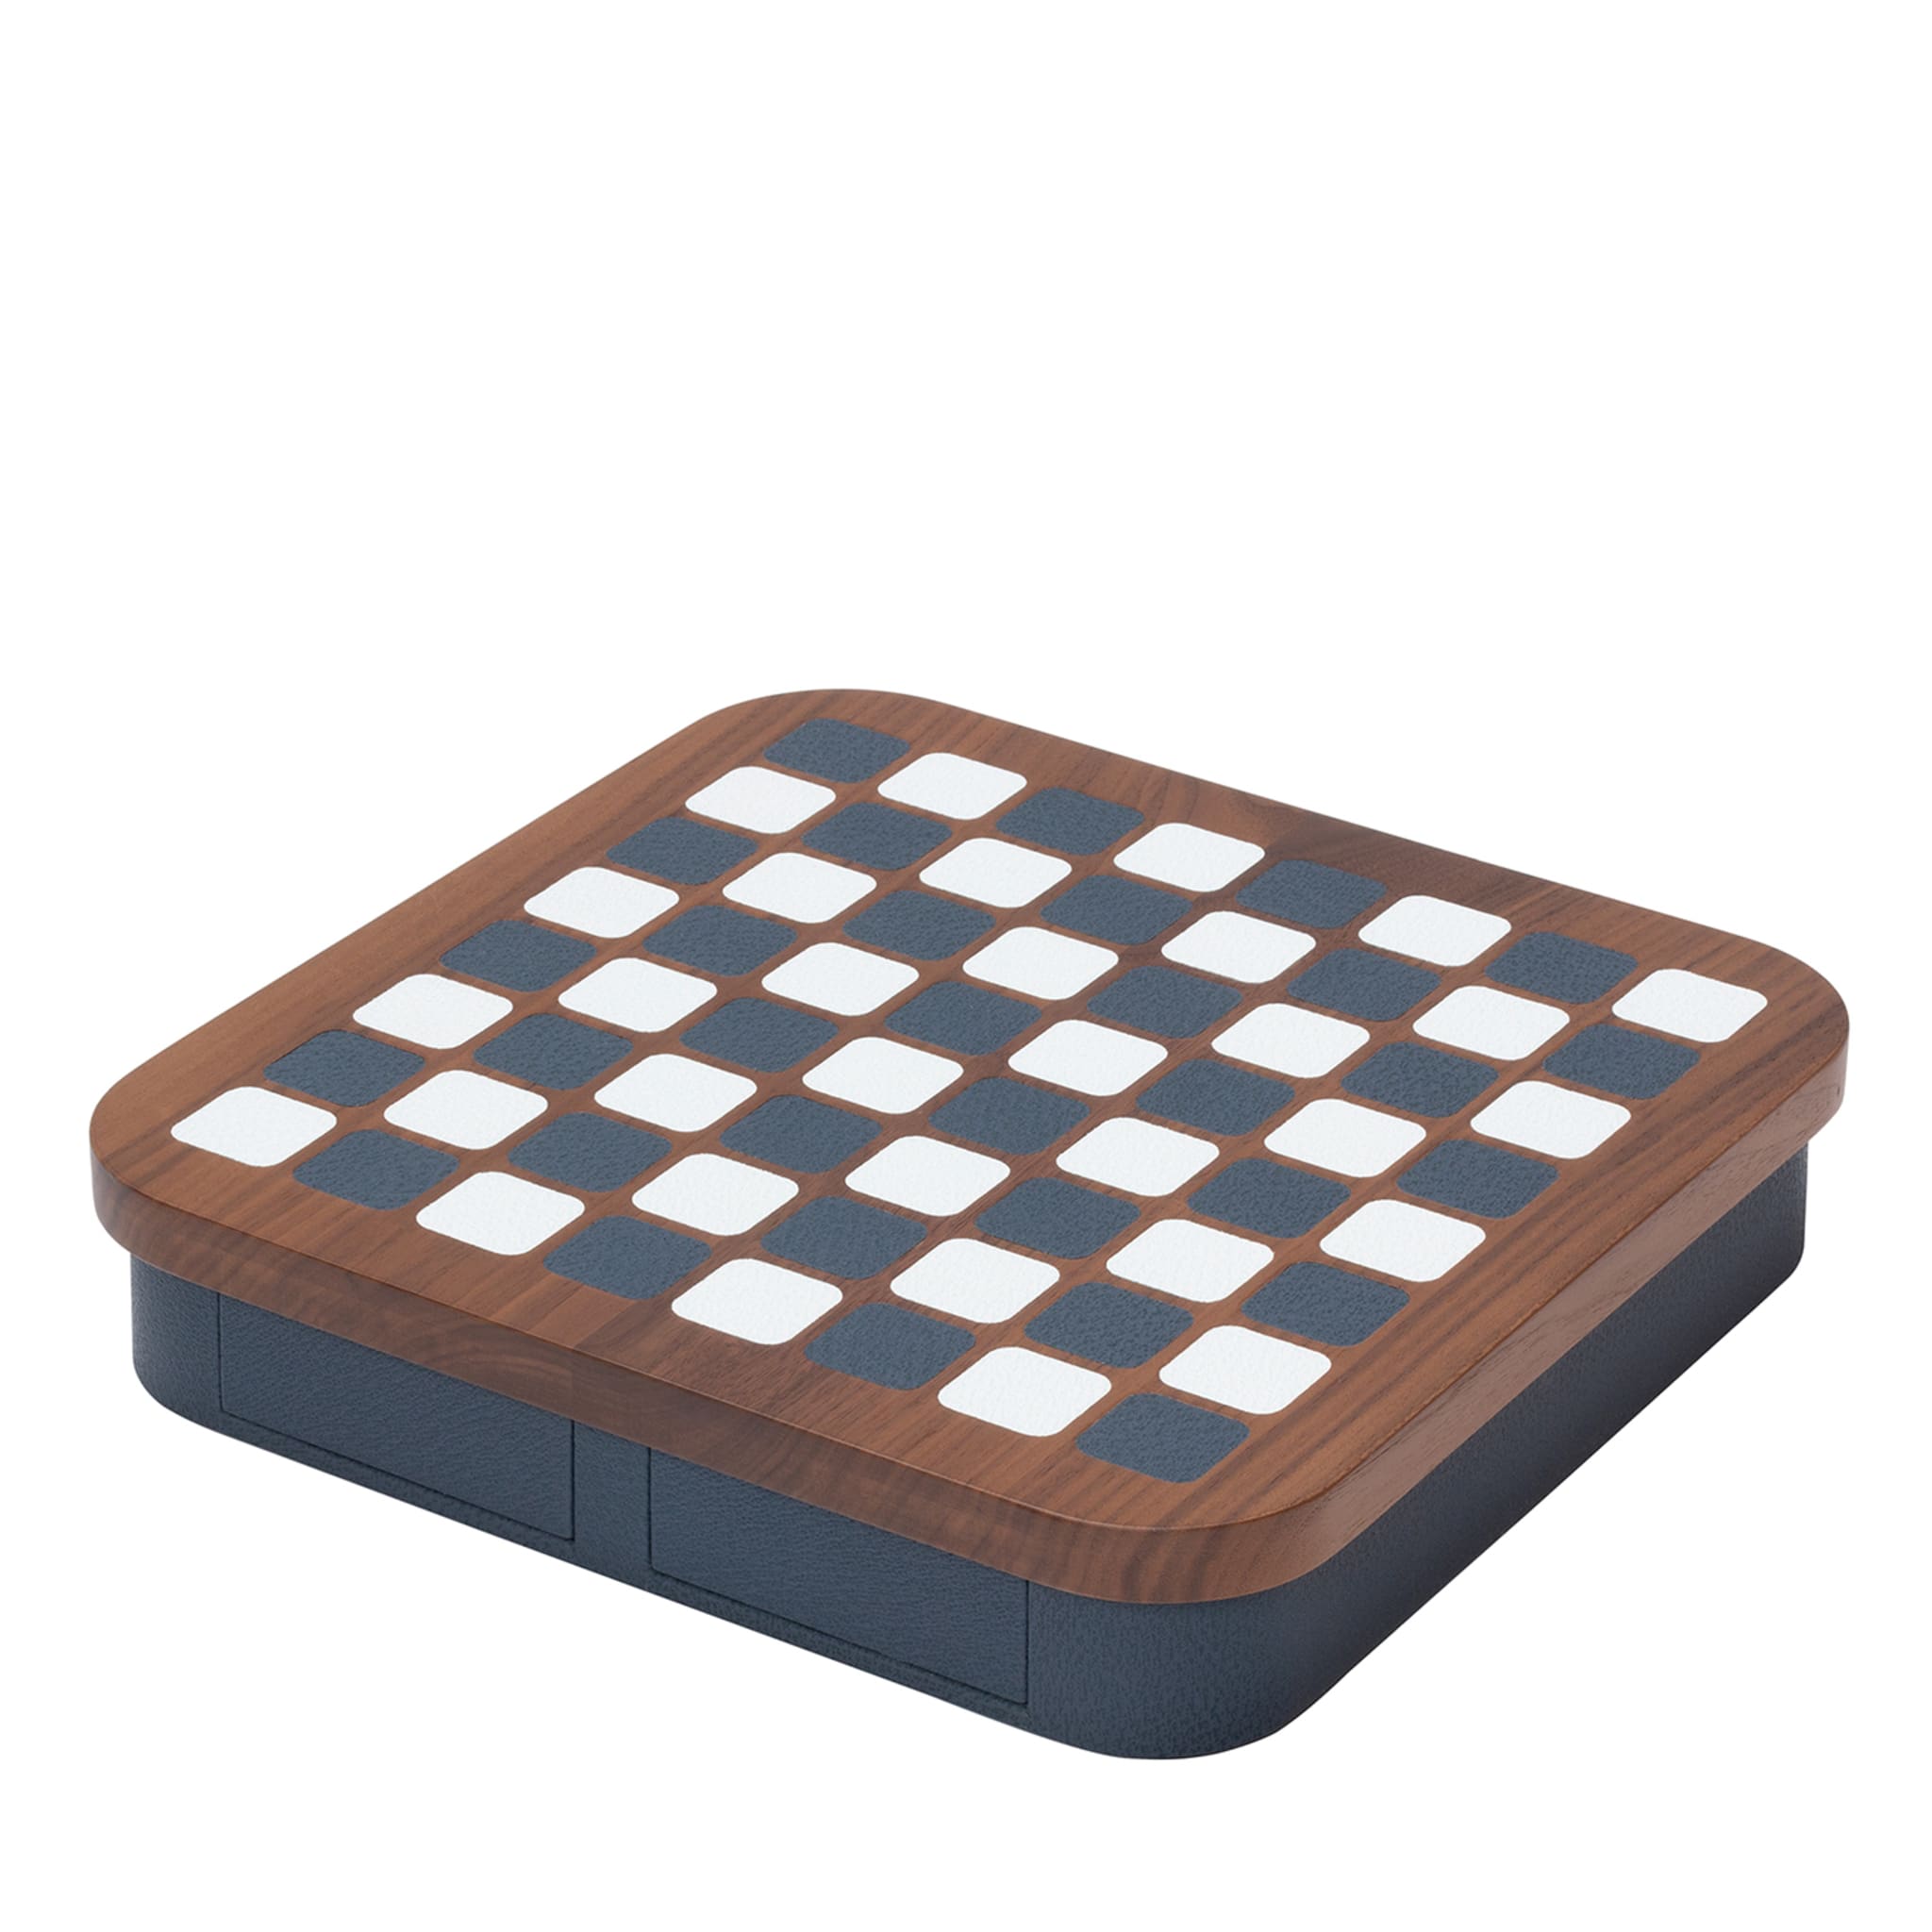 Delos Wood Chess Set - Main view